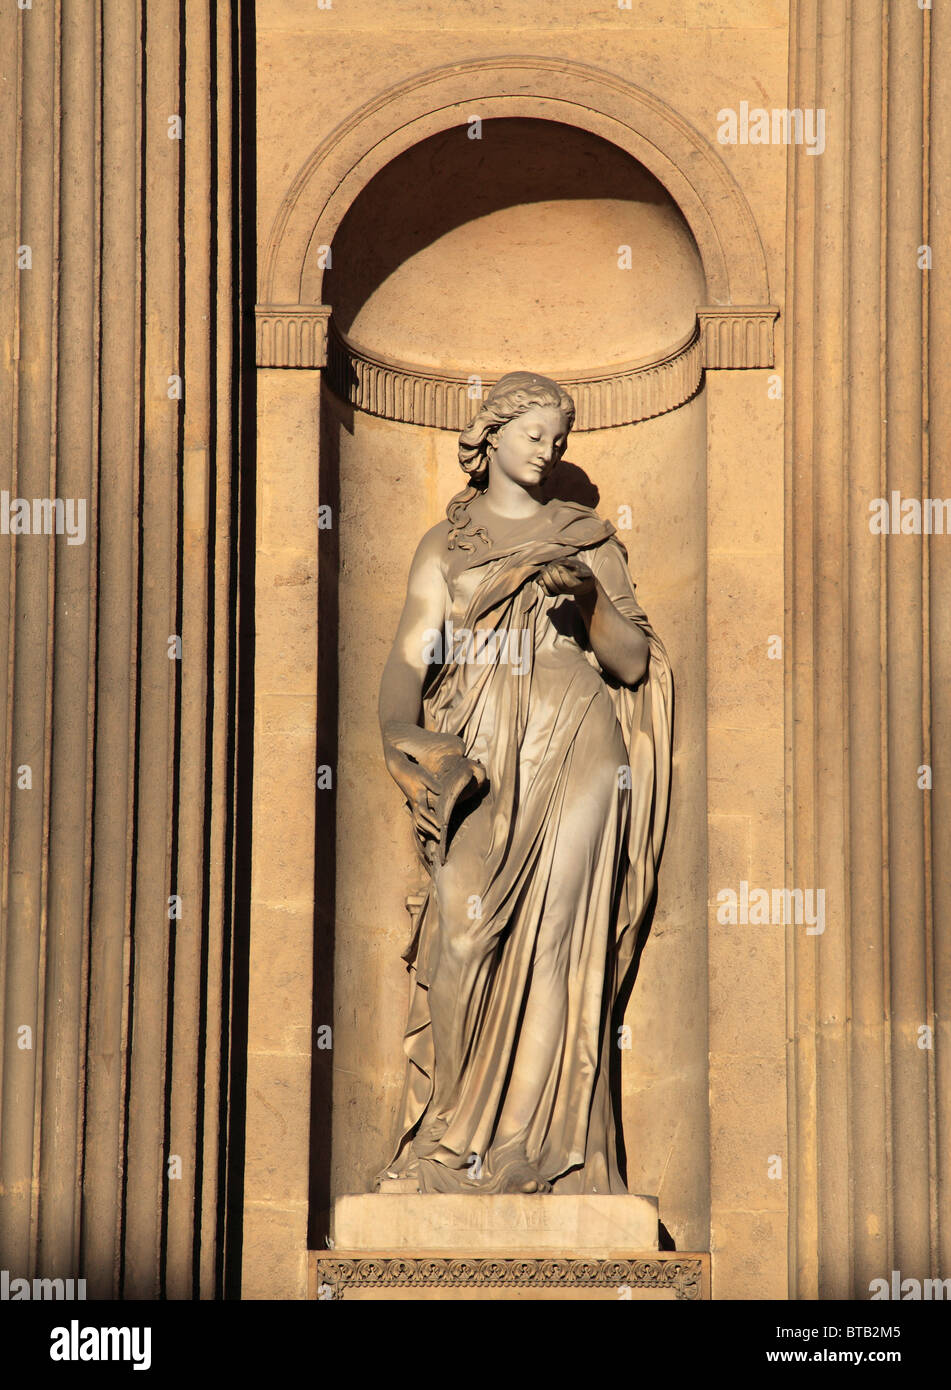 France, Paris, Le Louvre, palace, museum, Cour Carrée, statue, Stock Photo